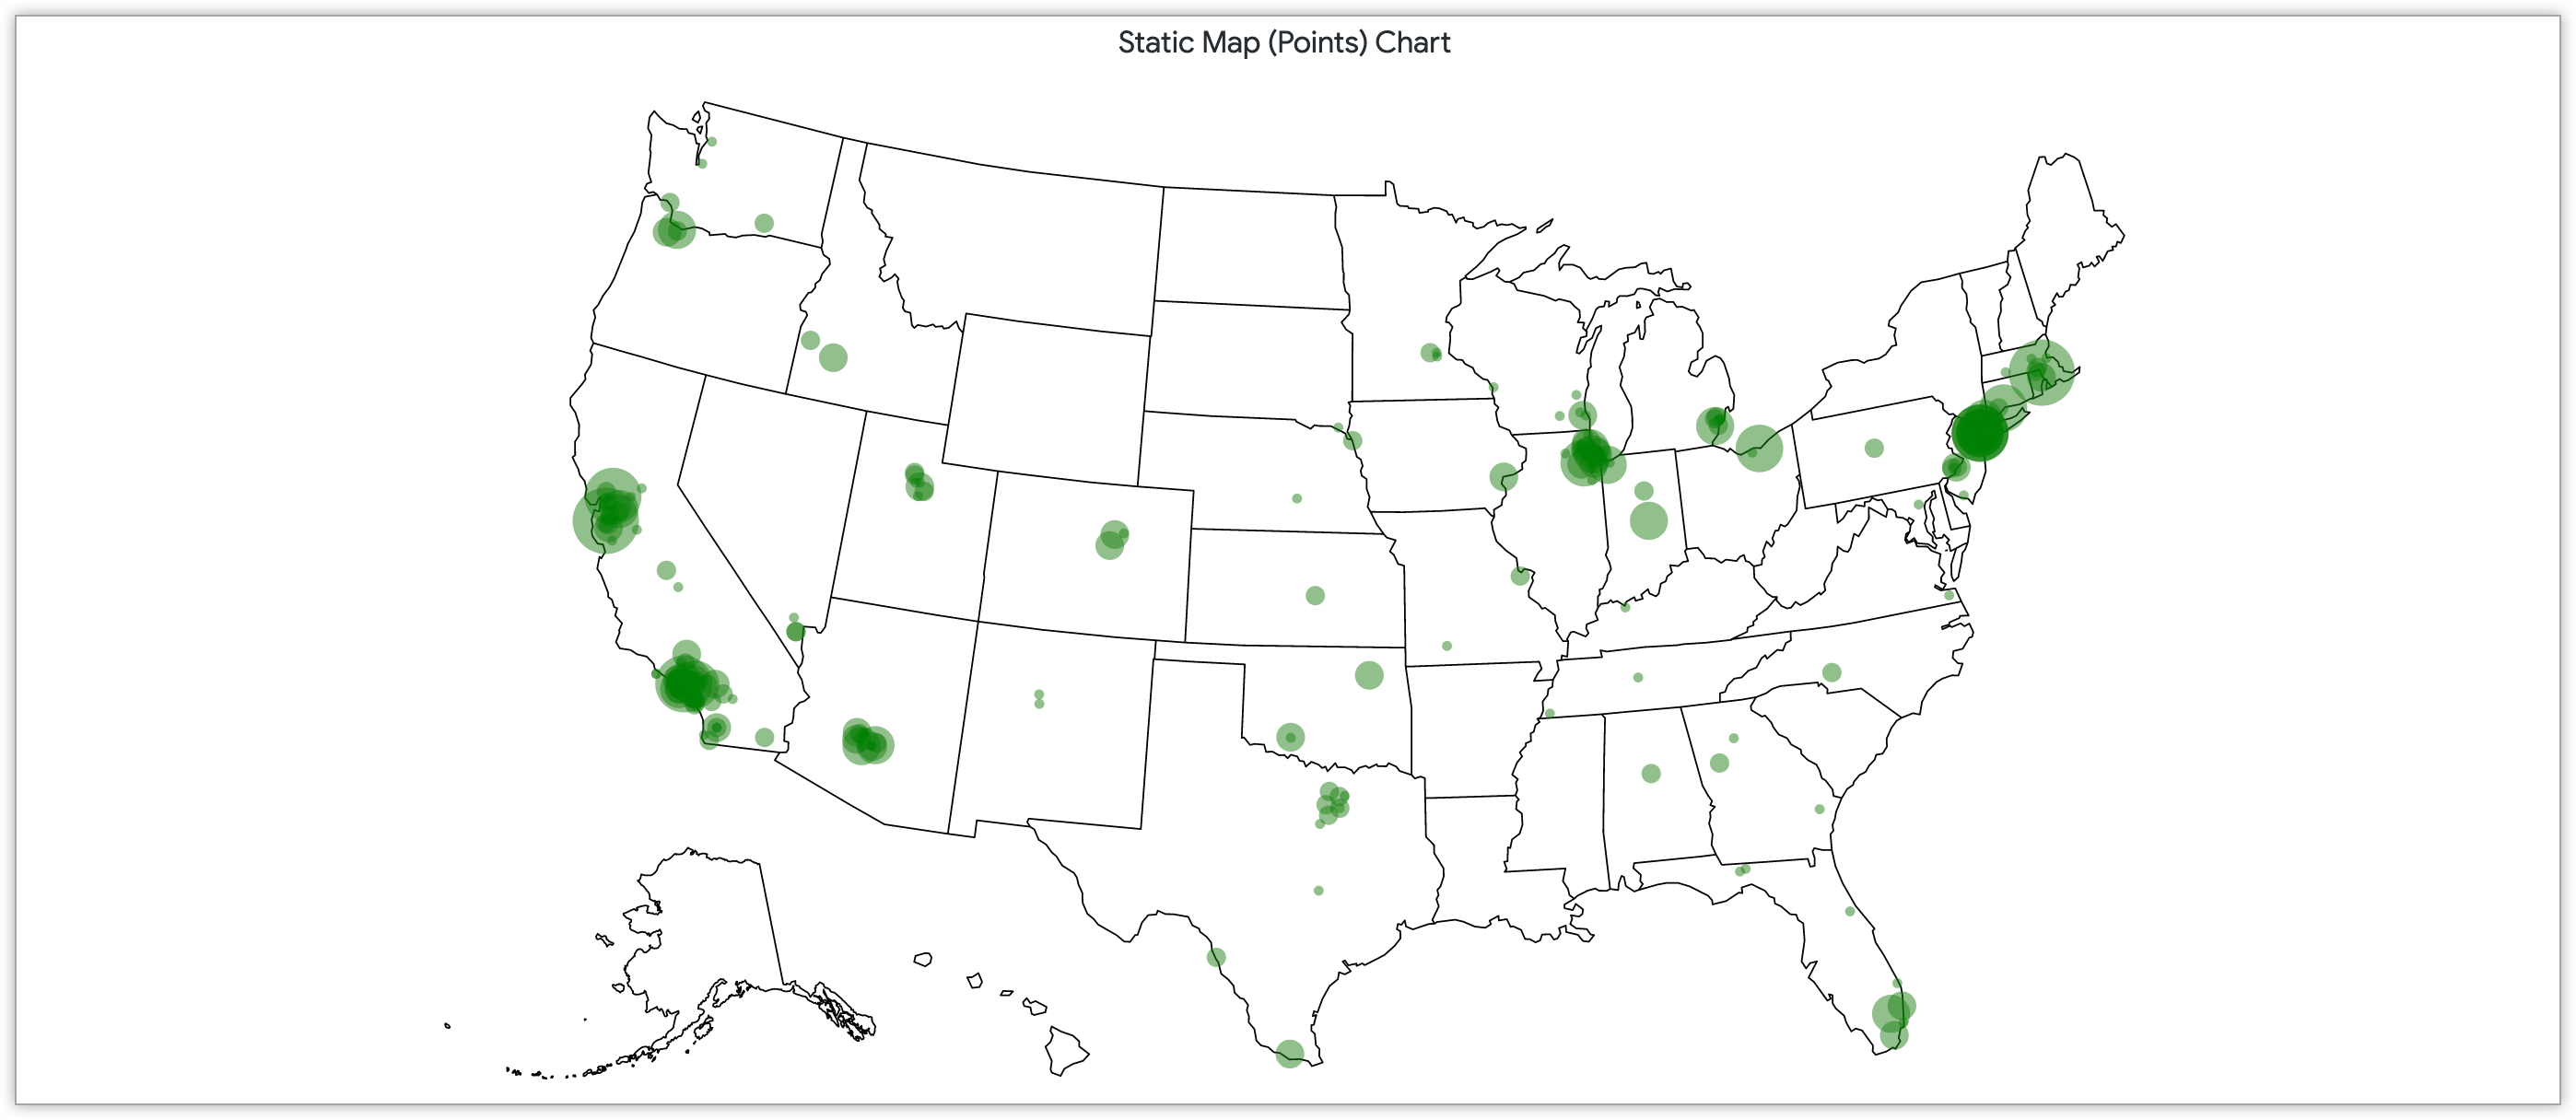 Gráfico de mapa estático com pontos dimensionados pela quantidade de clientes em CEPs nos Estados Unidos.